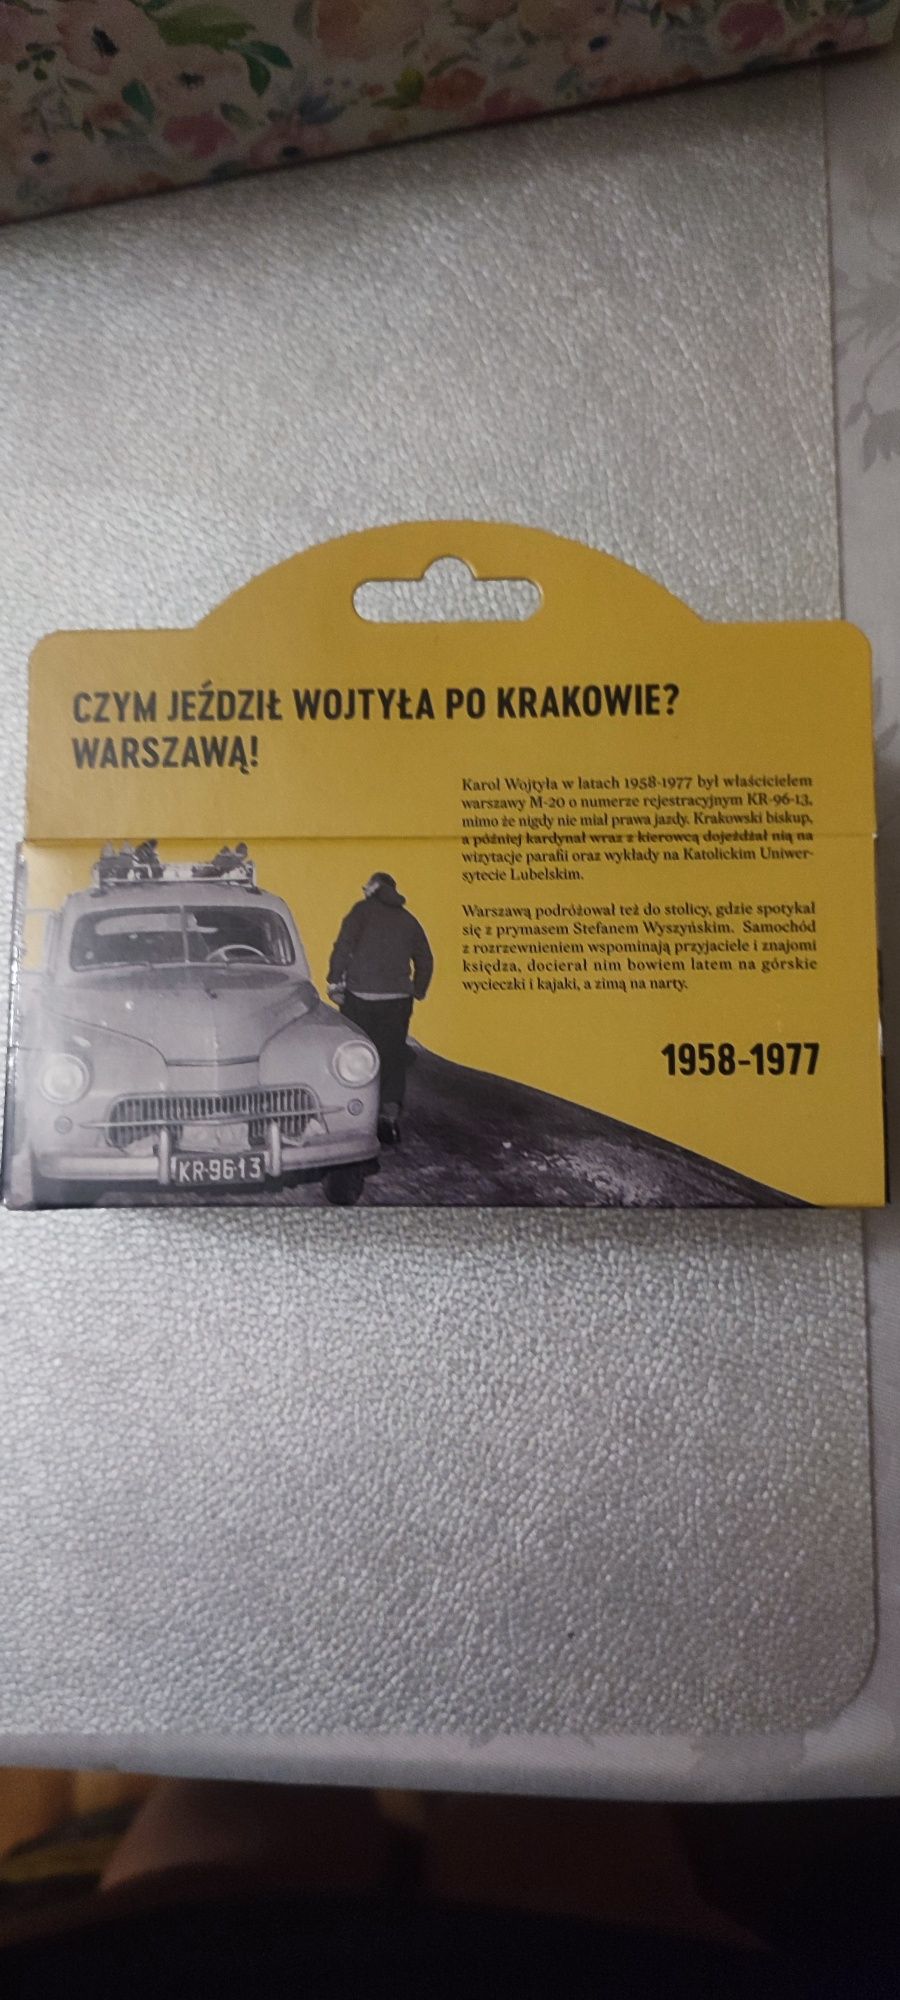 Samochód Warszawa Wojtyły metalowy skala 1:48 nowy seria Premium